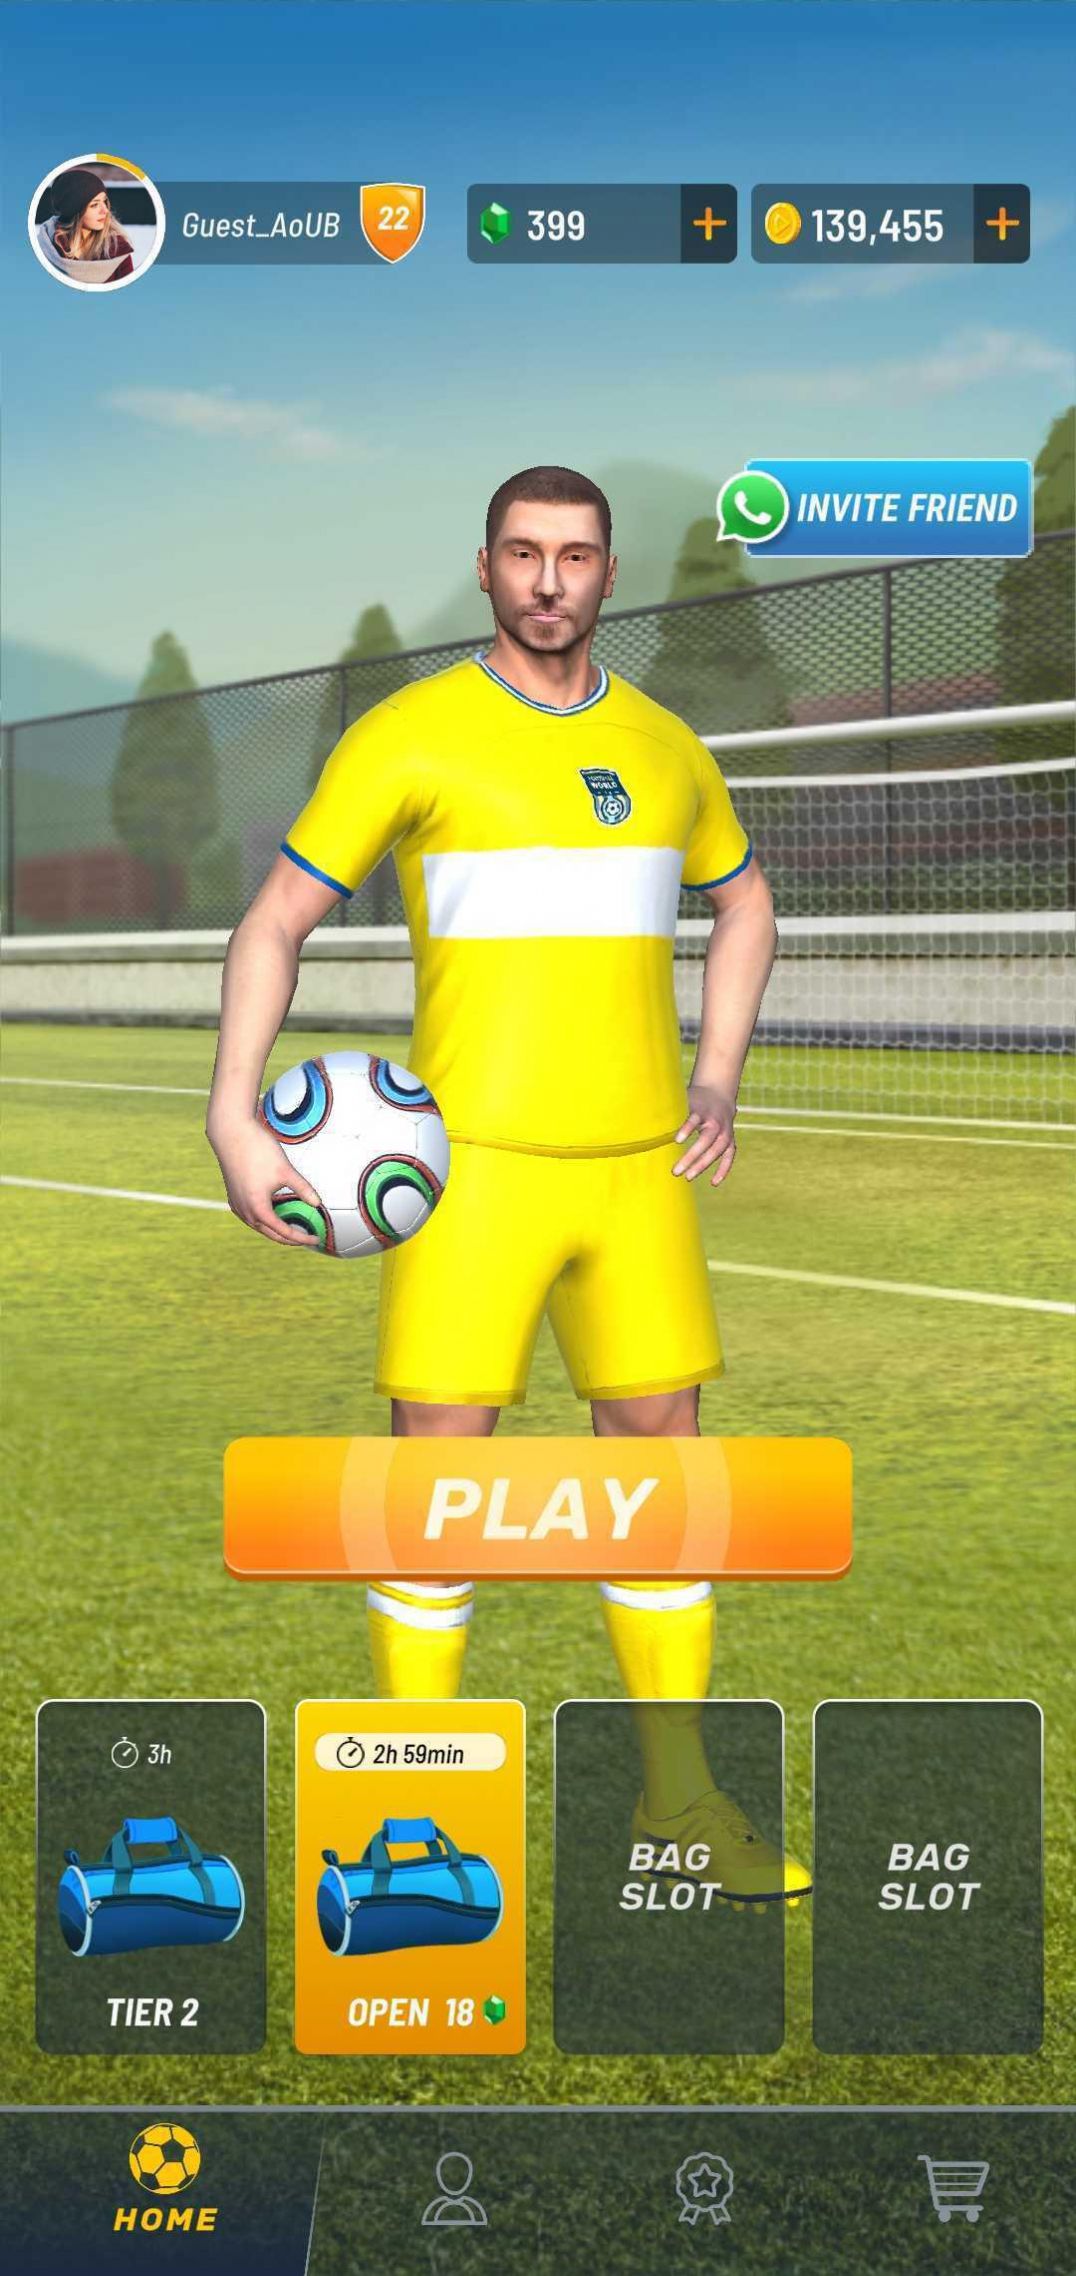 足球世界在线足球手机版下载,足球世界在线足球游戏官方手机版 v2.02.05